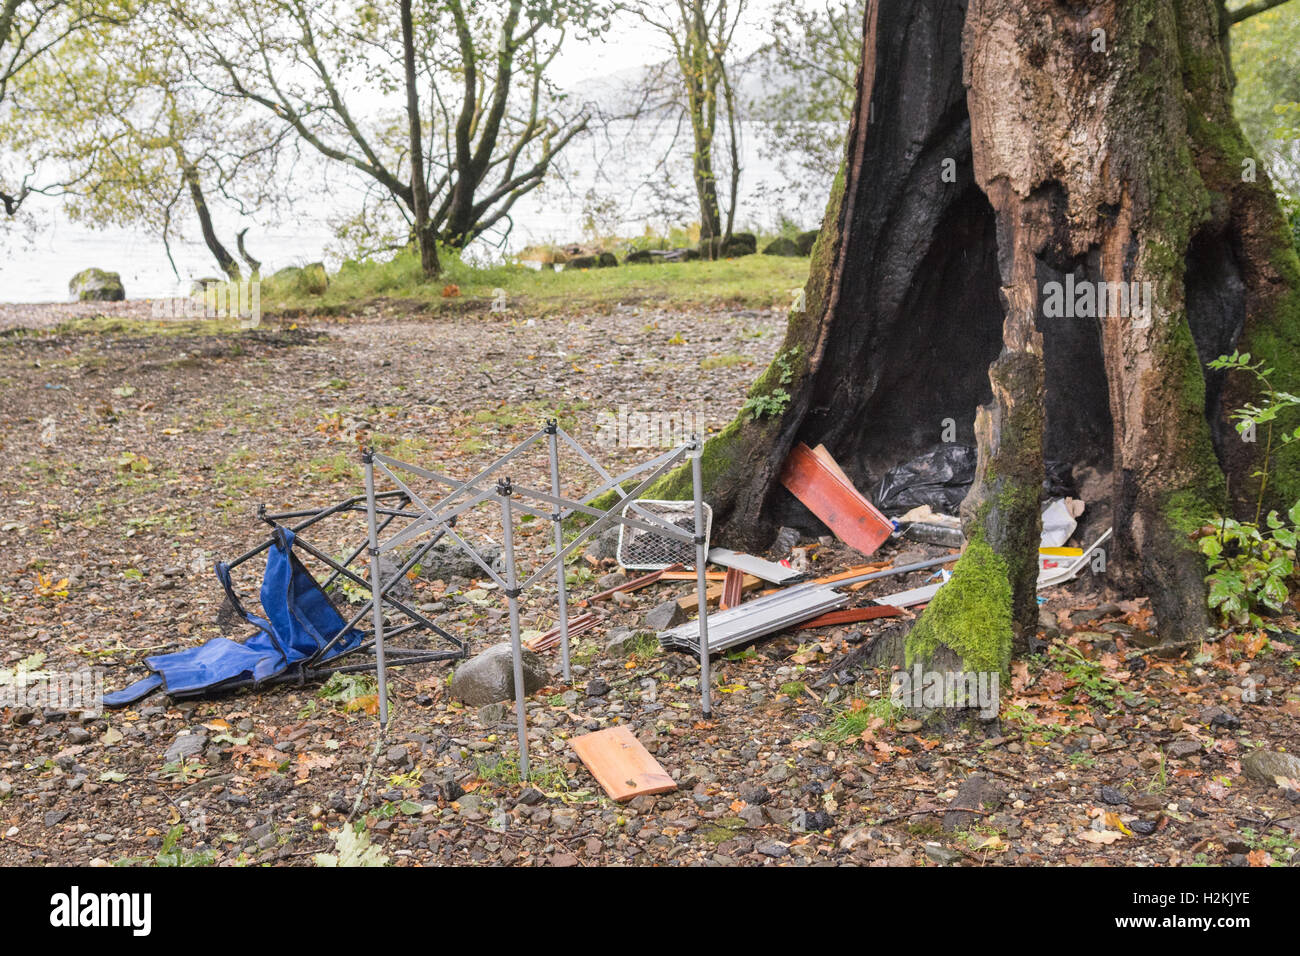 Camping sauvage - problèmes de comportement antisocial et les dommages à l'environnement - sur la rive ouest du Loch Lomond Ecosse - Déchets et débris Arbre brûlé Banque D'Images